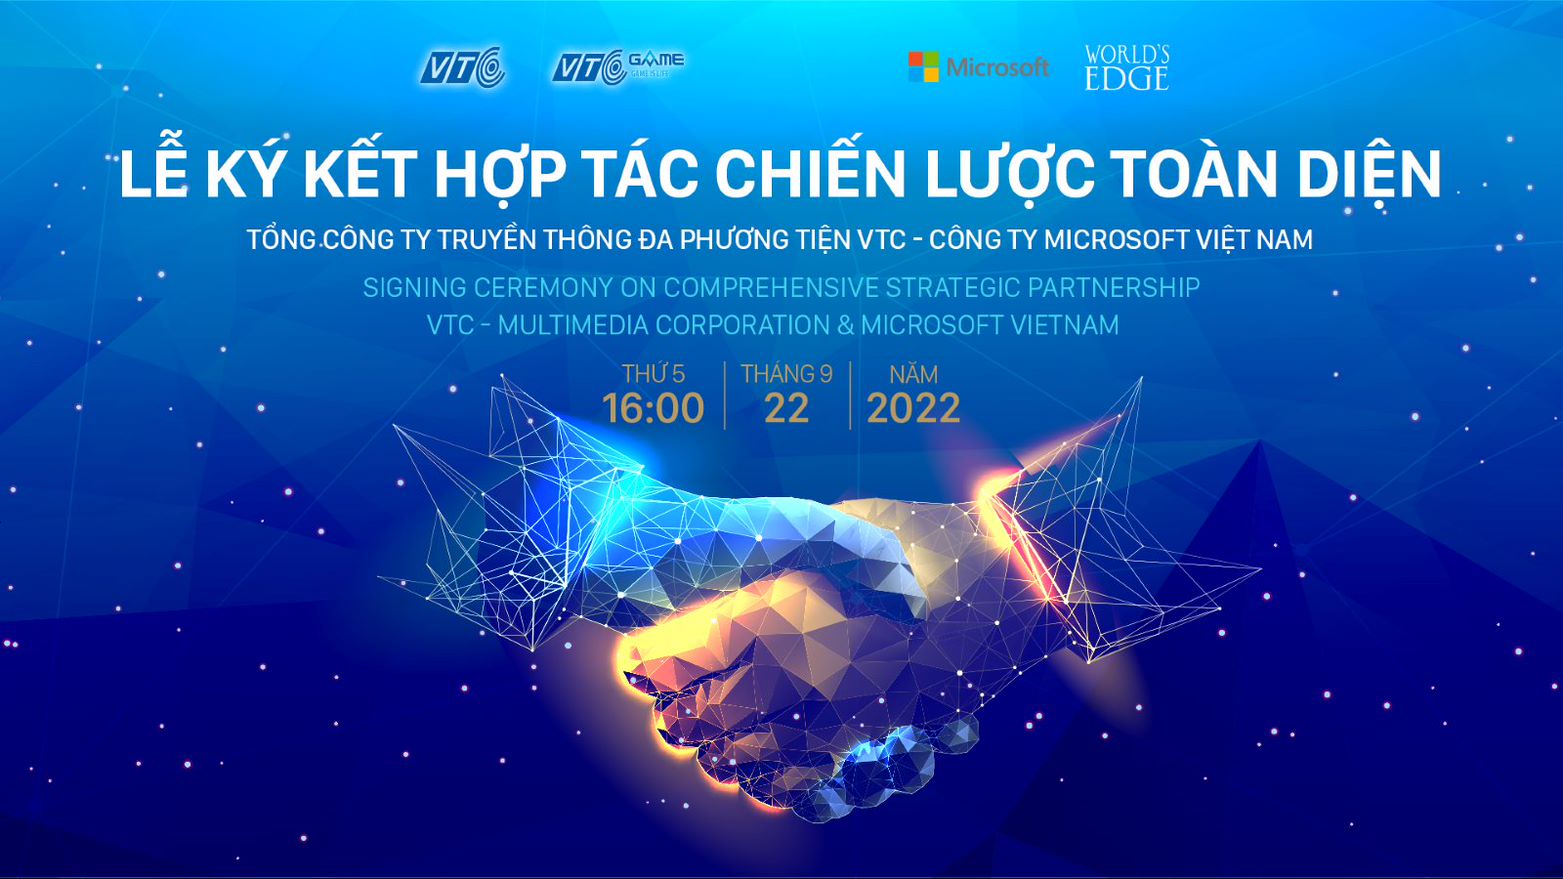 VTC hé lộ về sự kiện hợp tác cùng Microsoft, Tương lai mới cho AoE ở thị trường Việt Nam?